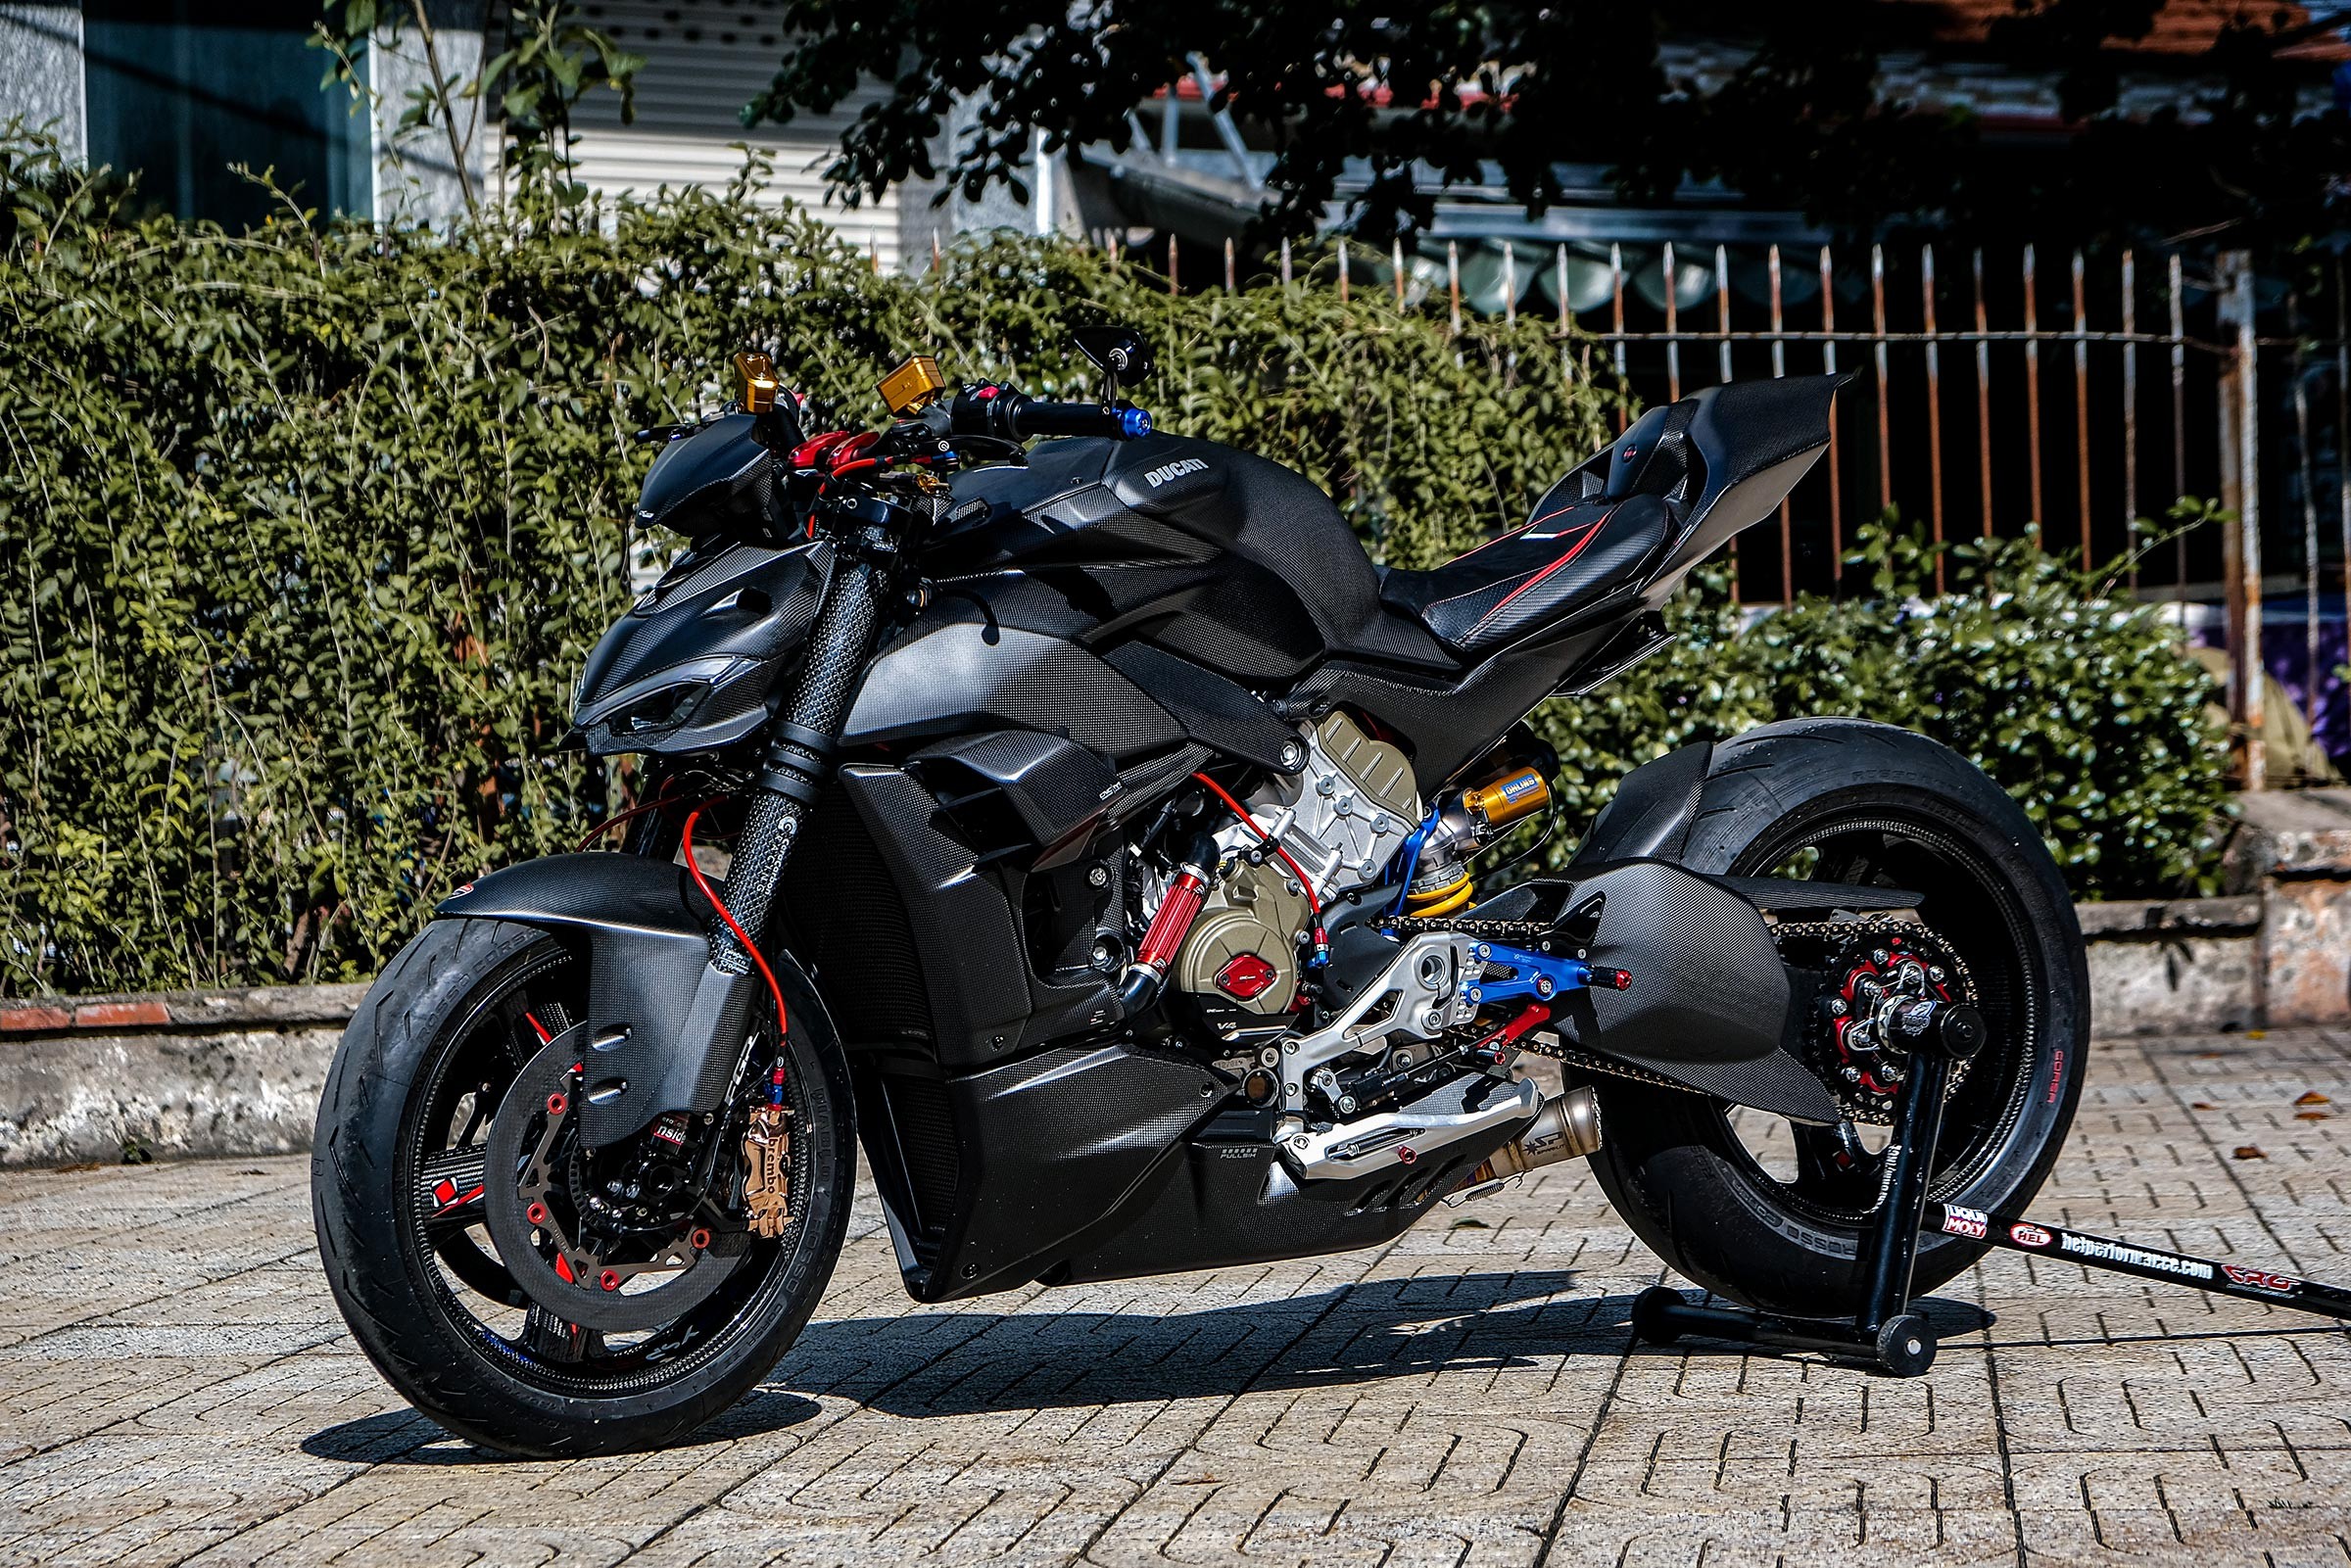 Ducati Streetfighter V4 S độ 2 tỷ đồng tại TP.HCM có gì đặc biệt?